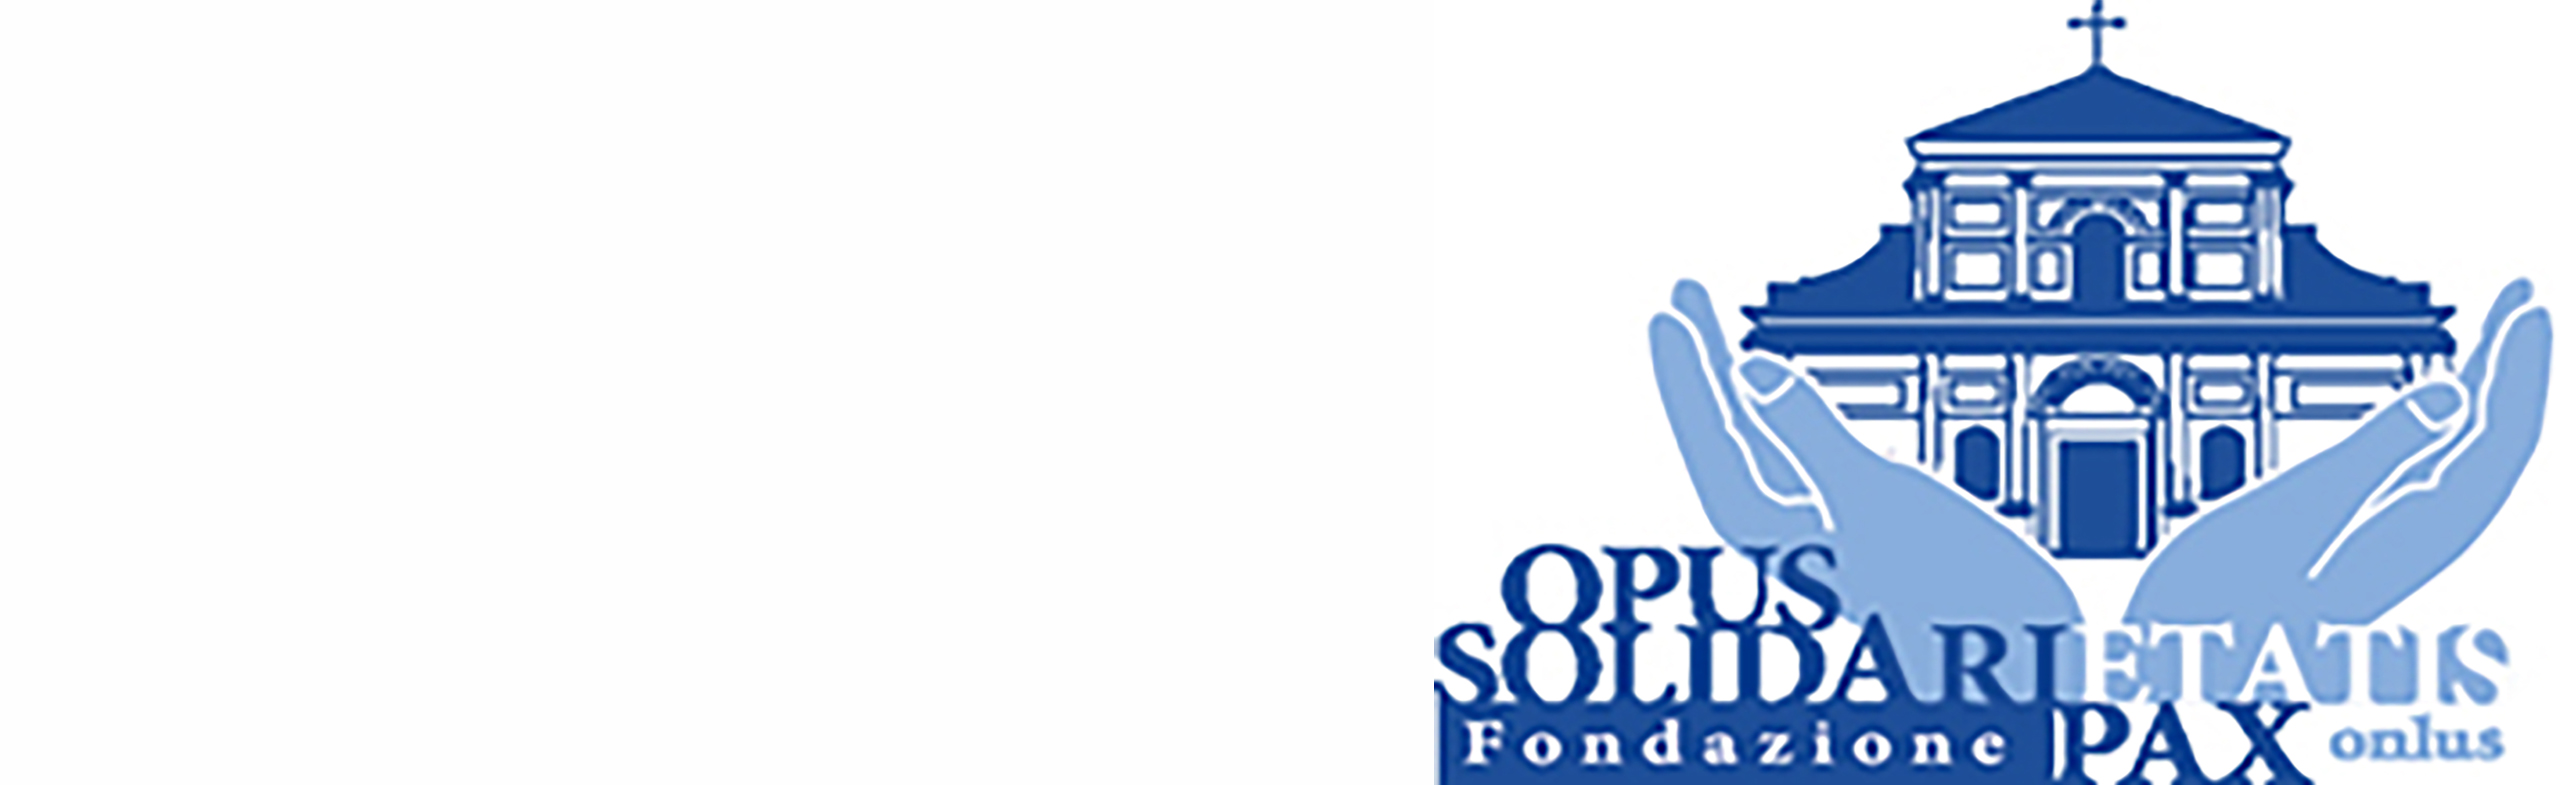 Fondazione Opus Solidarietatis Pax